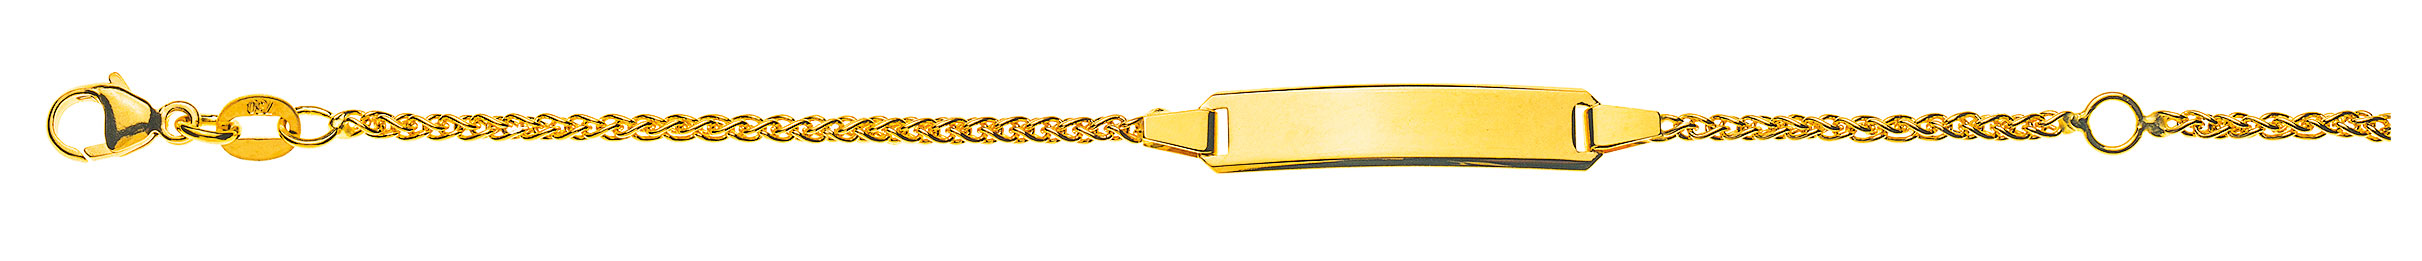 AURONOS Prestige ID-Bracelet en or jaune 18k Chaîne de tresses 16cm